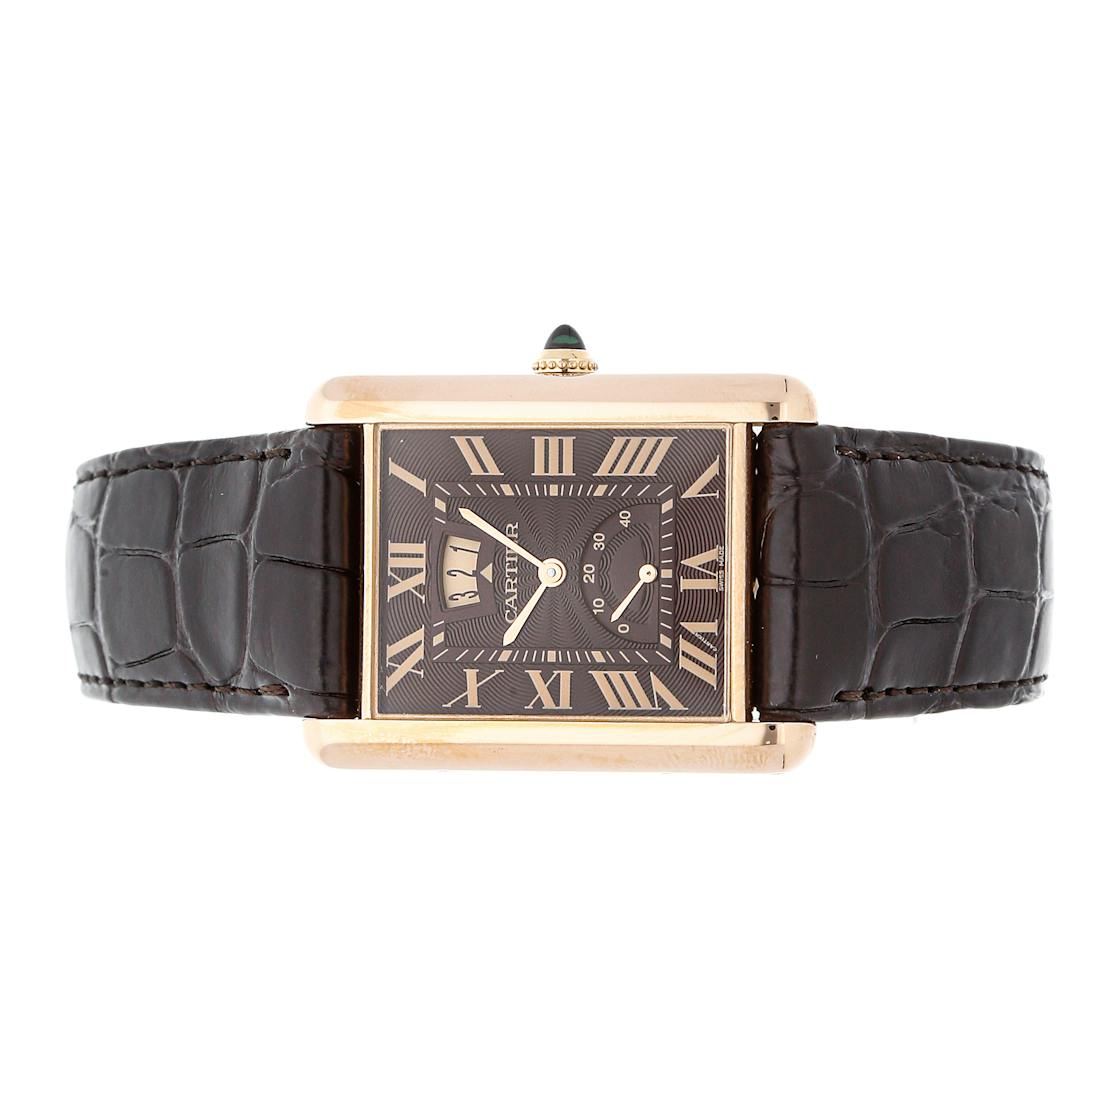 Cartier Tank Louis XL Power Reserve 18k Rose Gold Watch W1560003